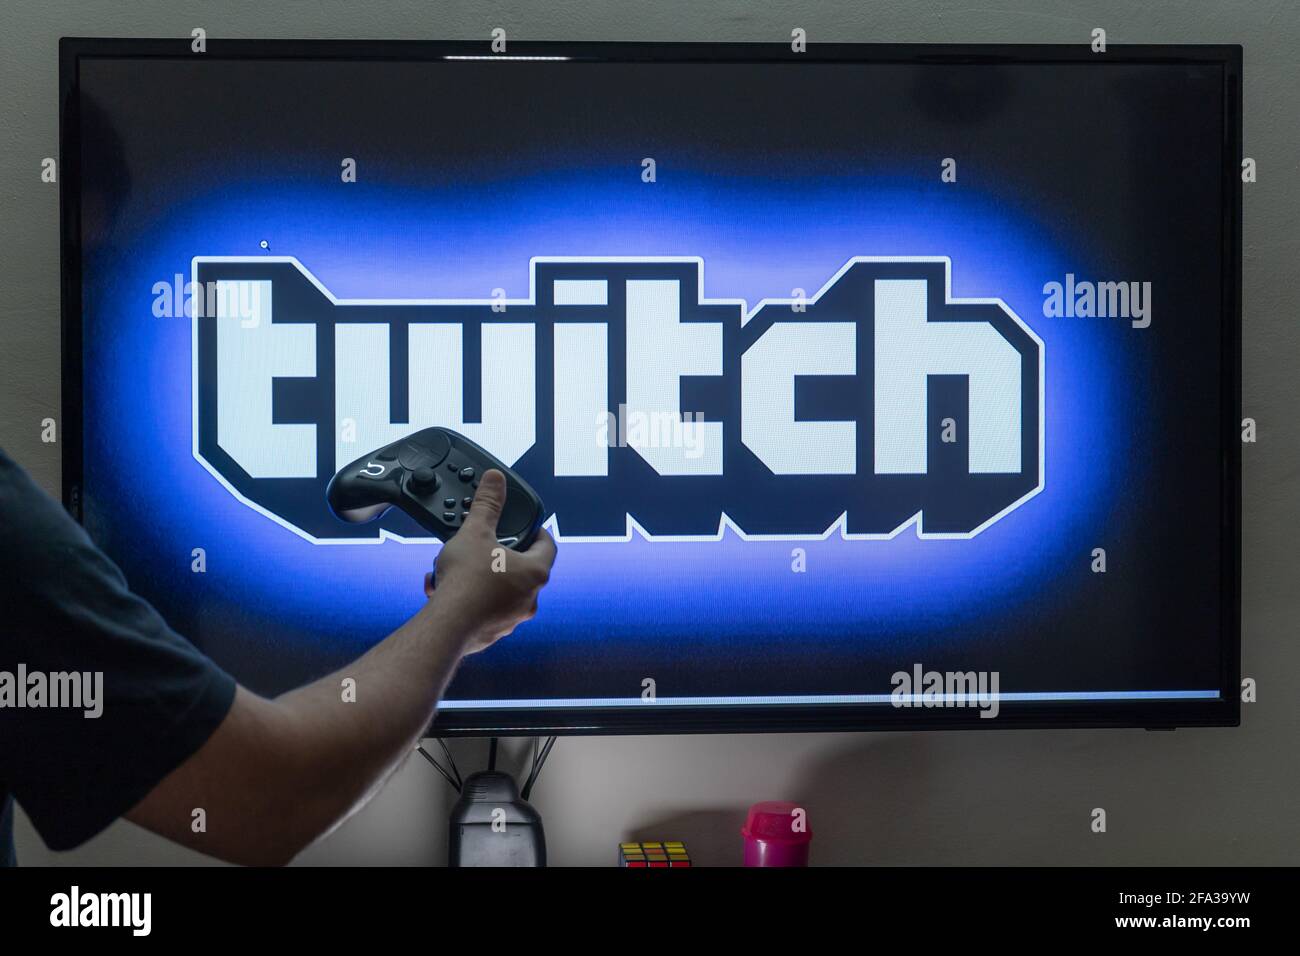 Homme tenant une télécommande de vapeur devant un PC écran de la console  montrant la plate-forme de diffusion en continu de twitch dans laquelle les  gens diffusent en continu plein temps pour